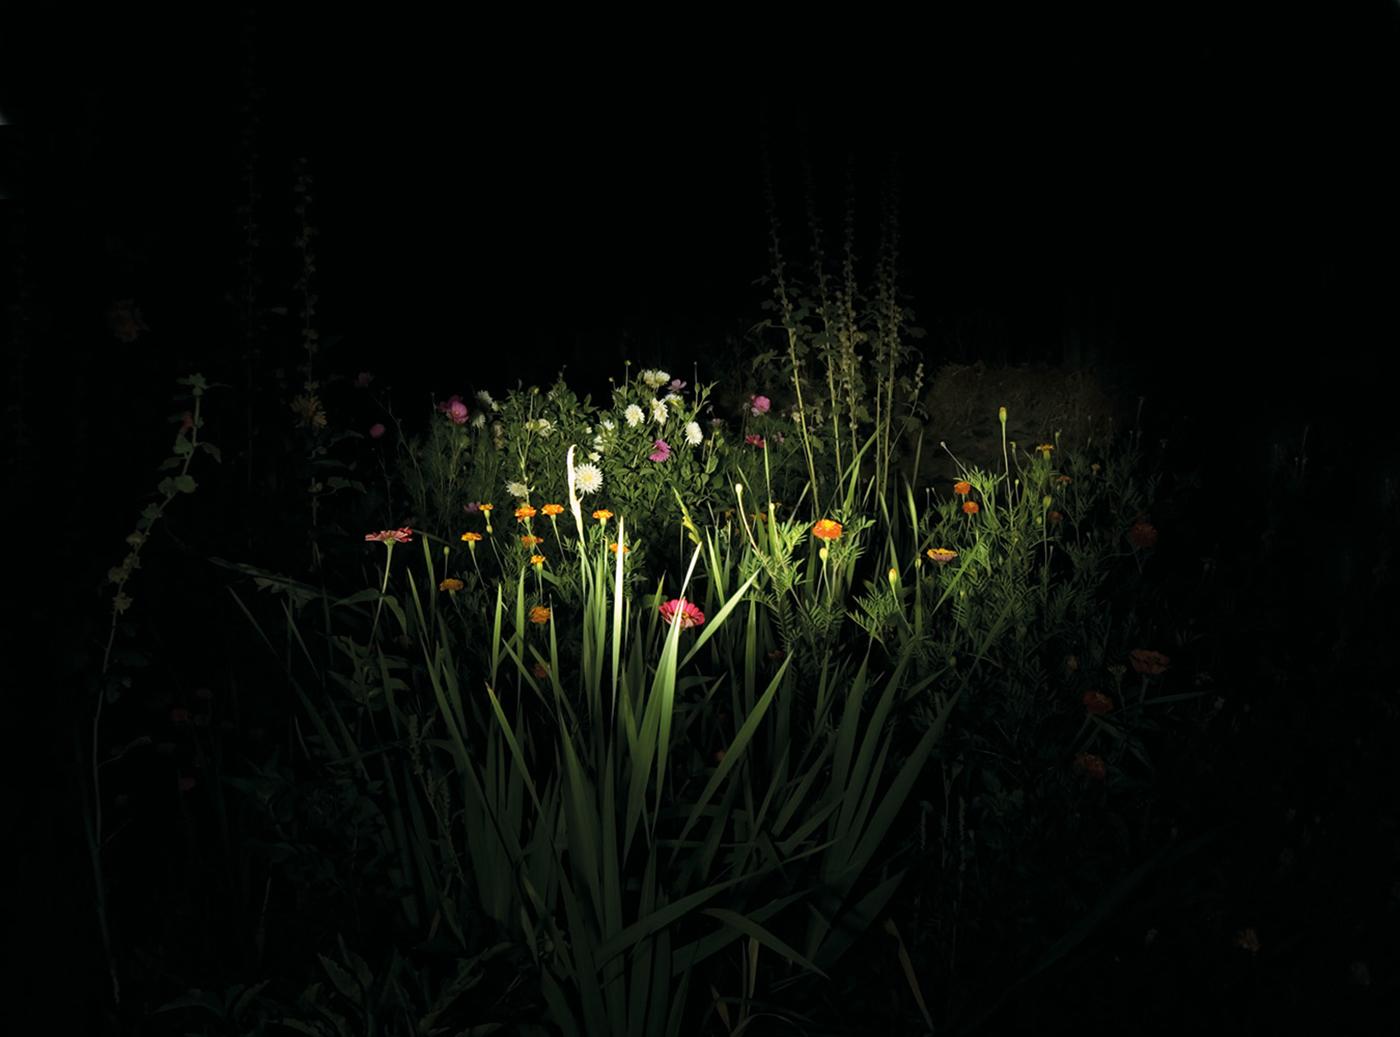 Jardin de nuit contemporain - Paysage, 21e siècle, couleur, nuit